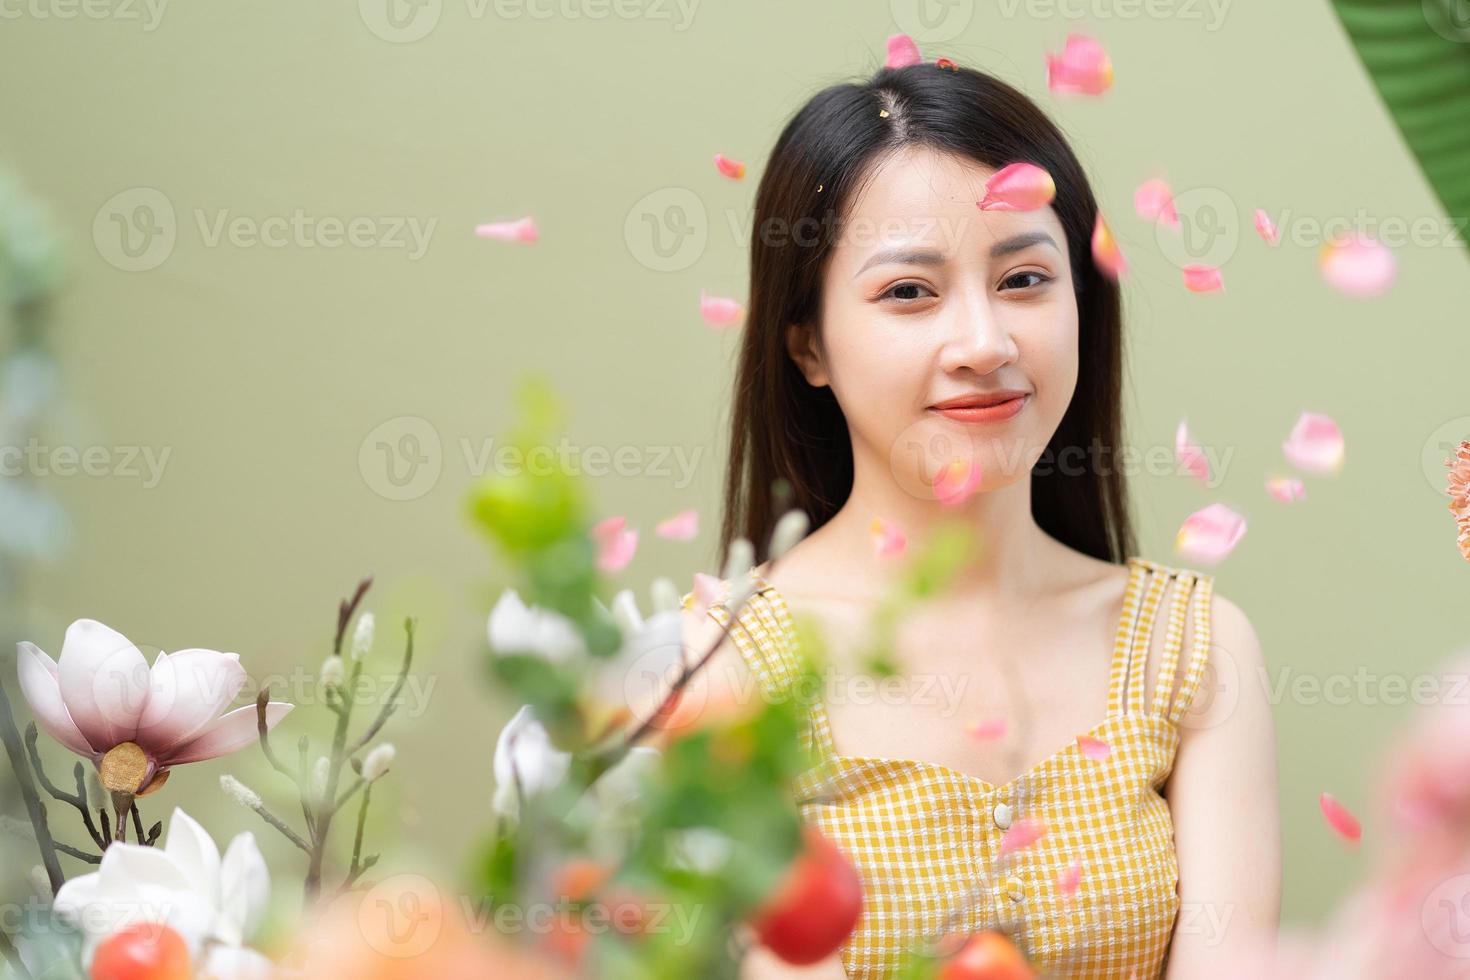 image de beauté de jeune femme asiatique, concept d'été photo